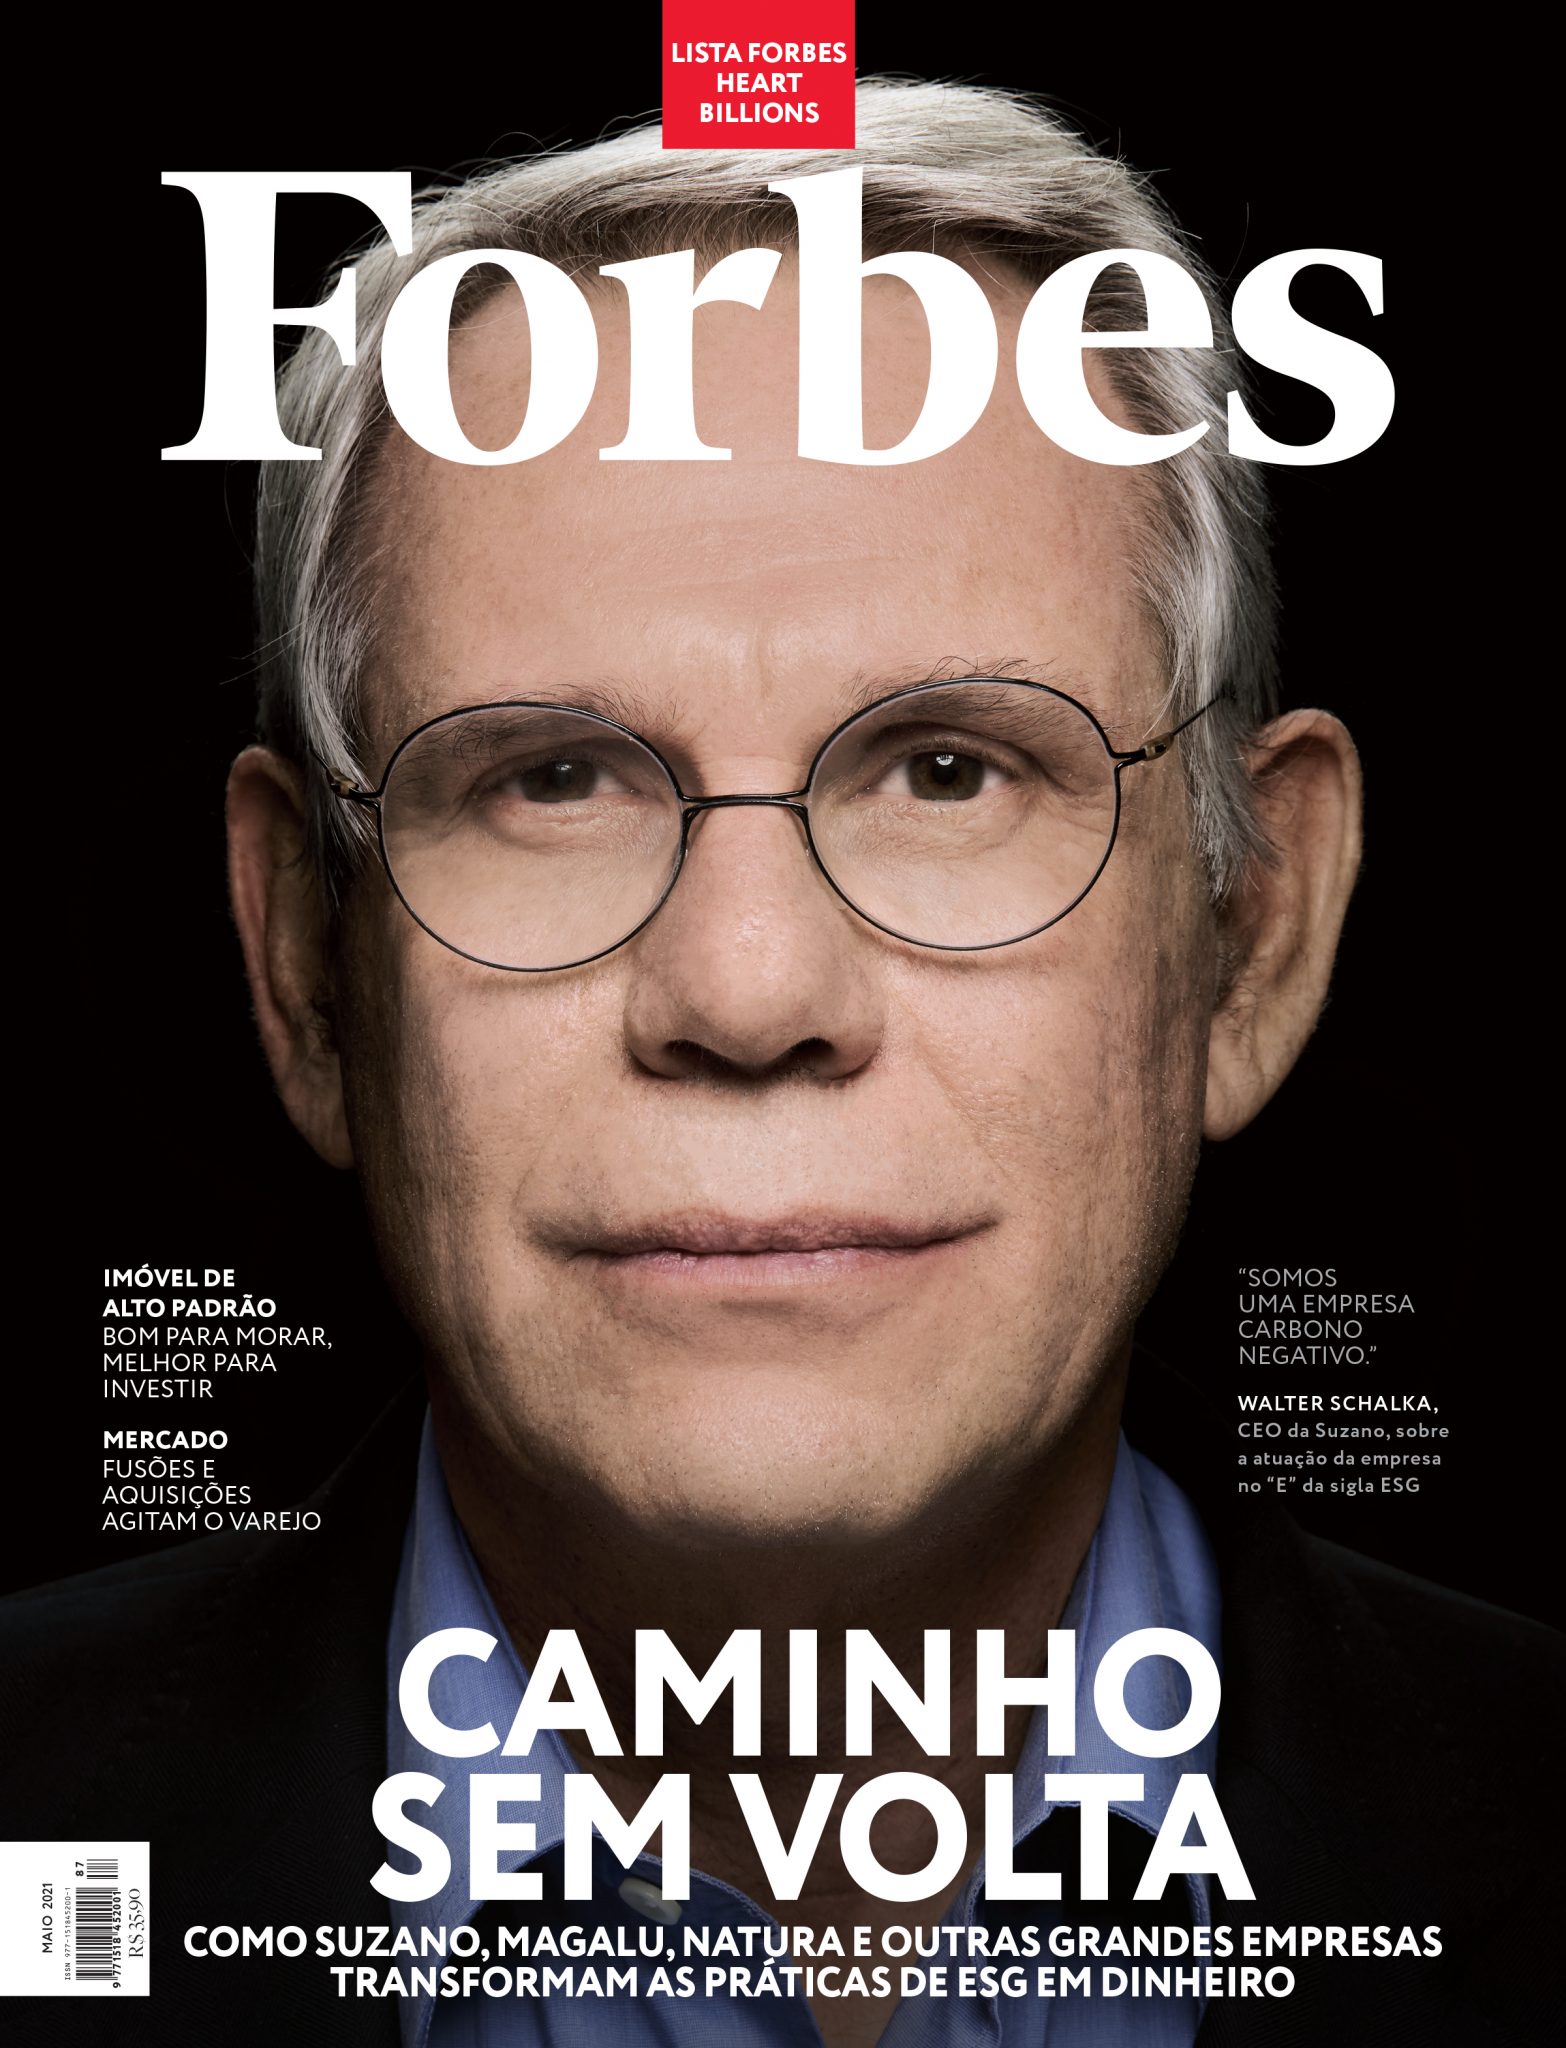 Edição da Forbes Brasil apresenta práticas de ESG nas grandes